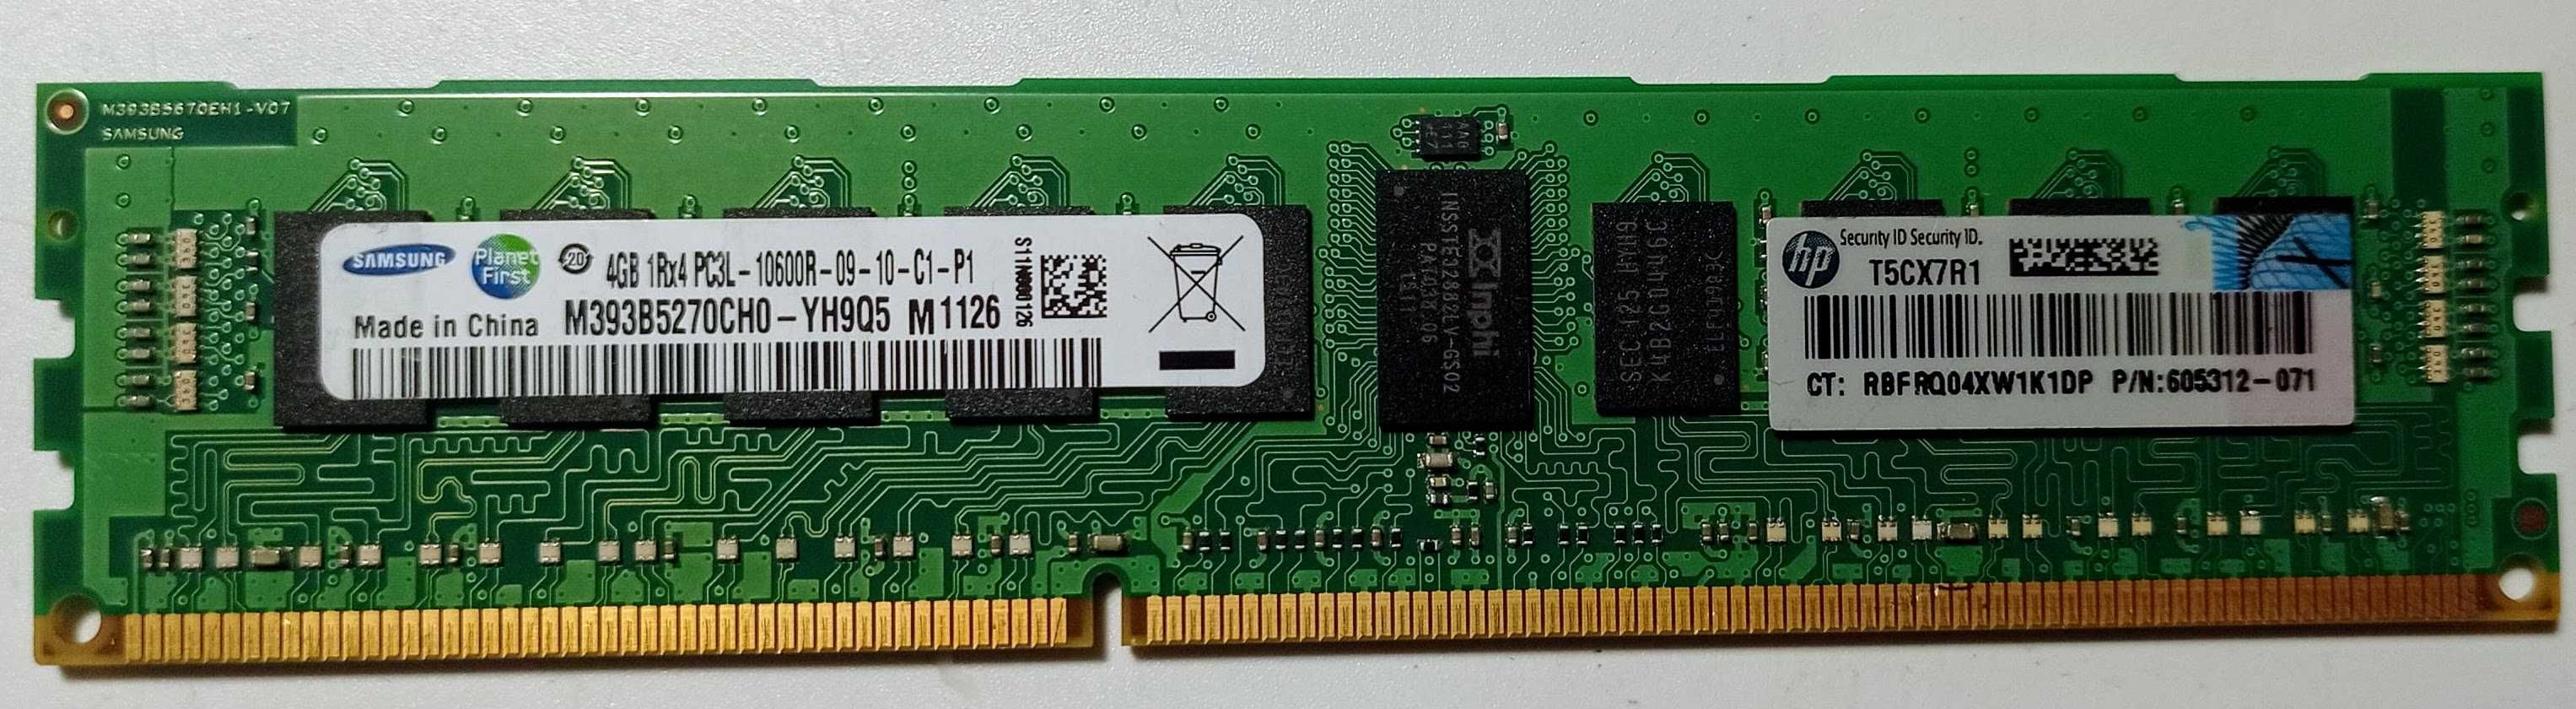 Memória RAM 4Gb DDR3L - 1 0 6 0 0 (várias unidades em stock)